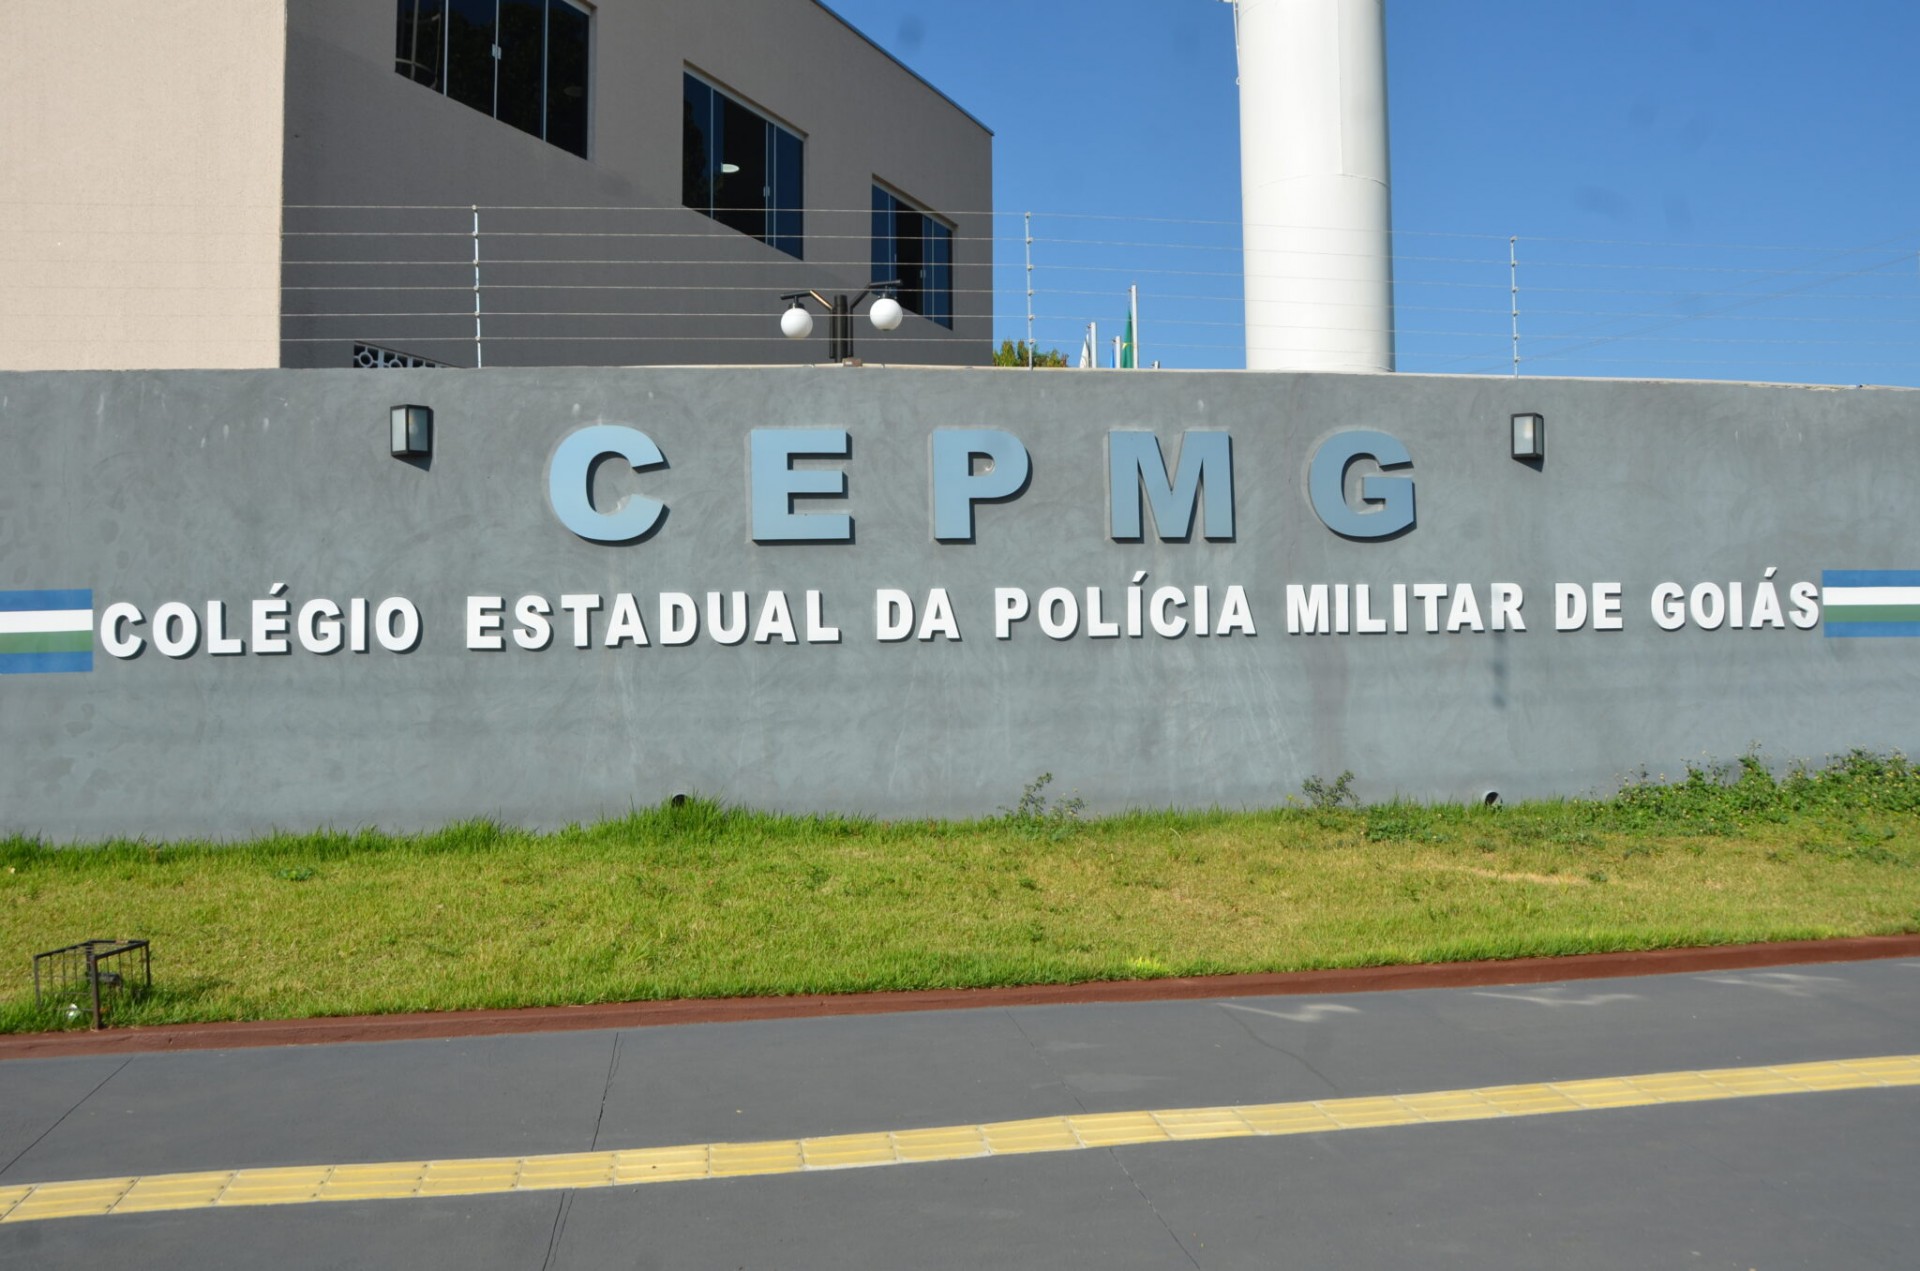 Seis escolas estaduais devem se tornar colégios da Polícia Militar de Goiás em 2023